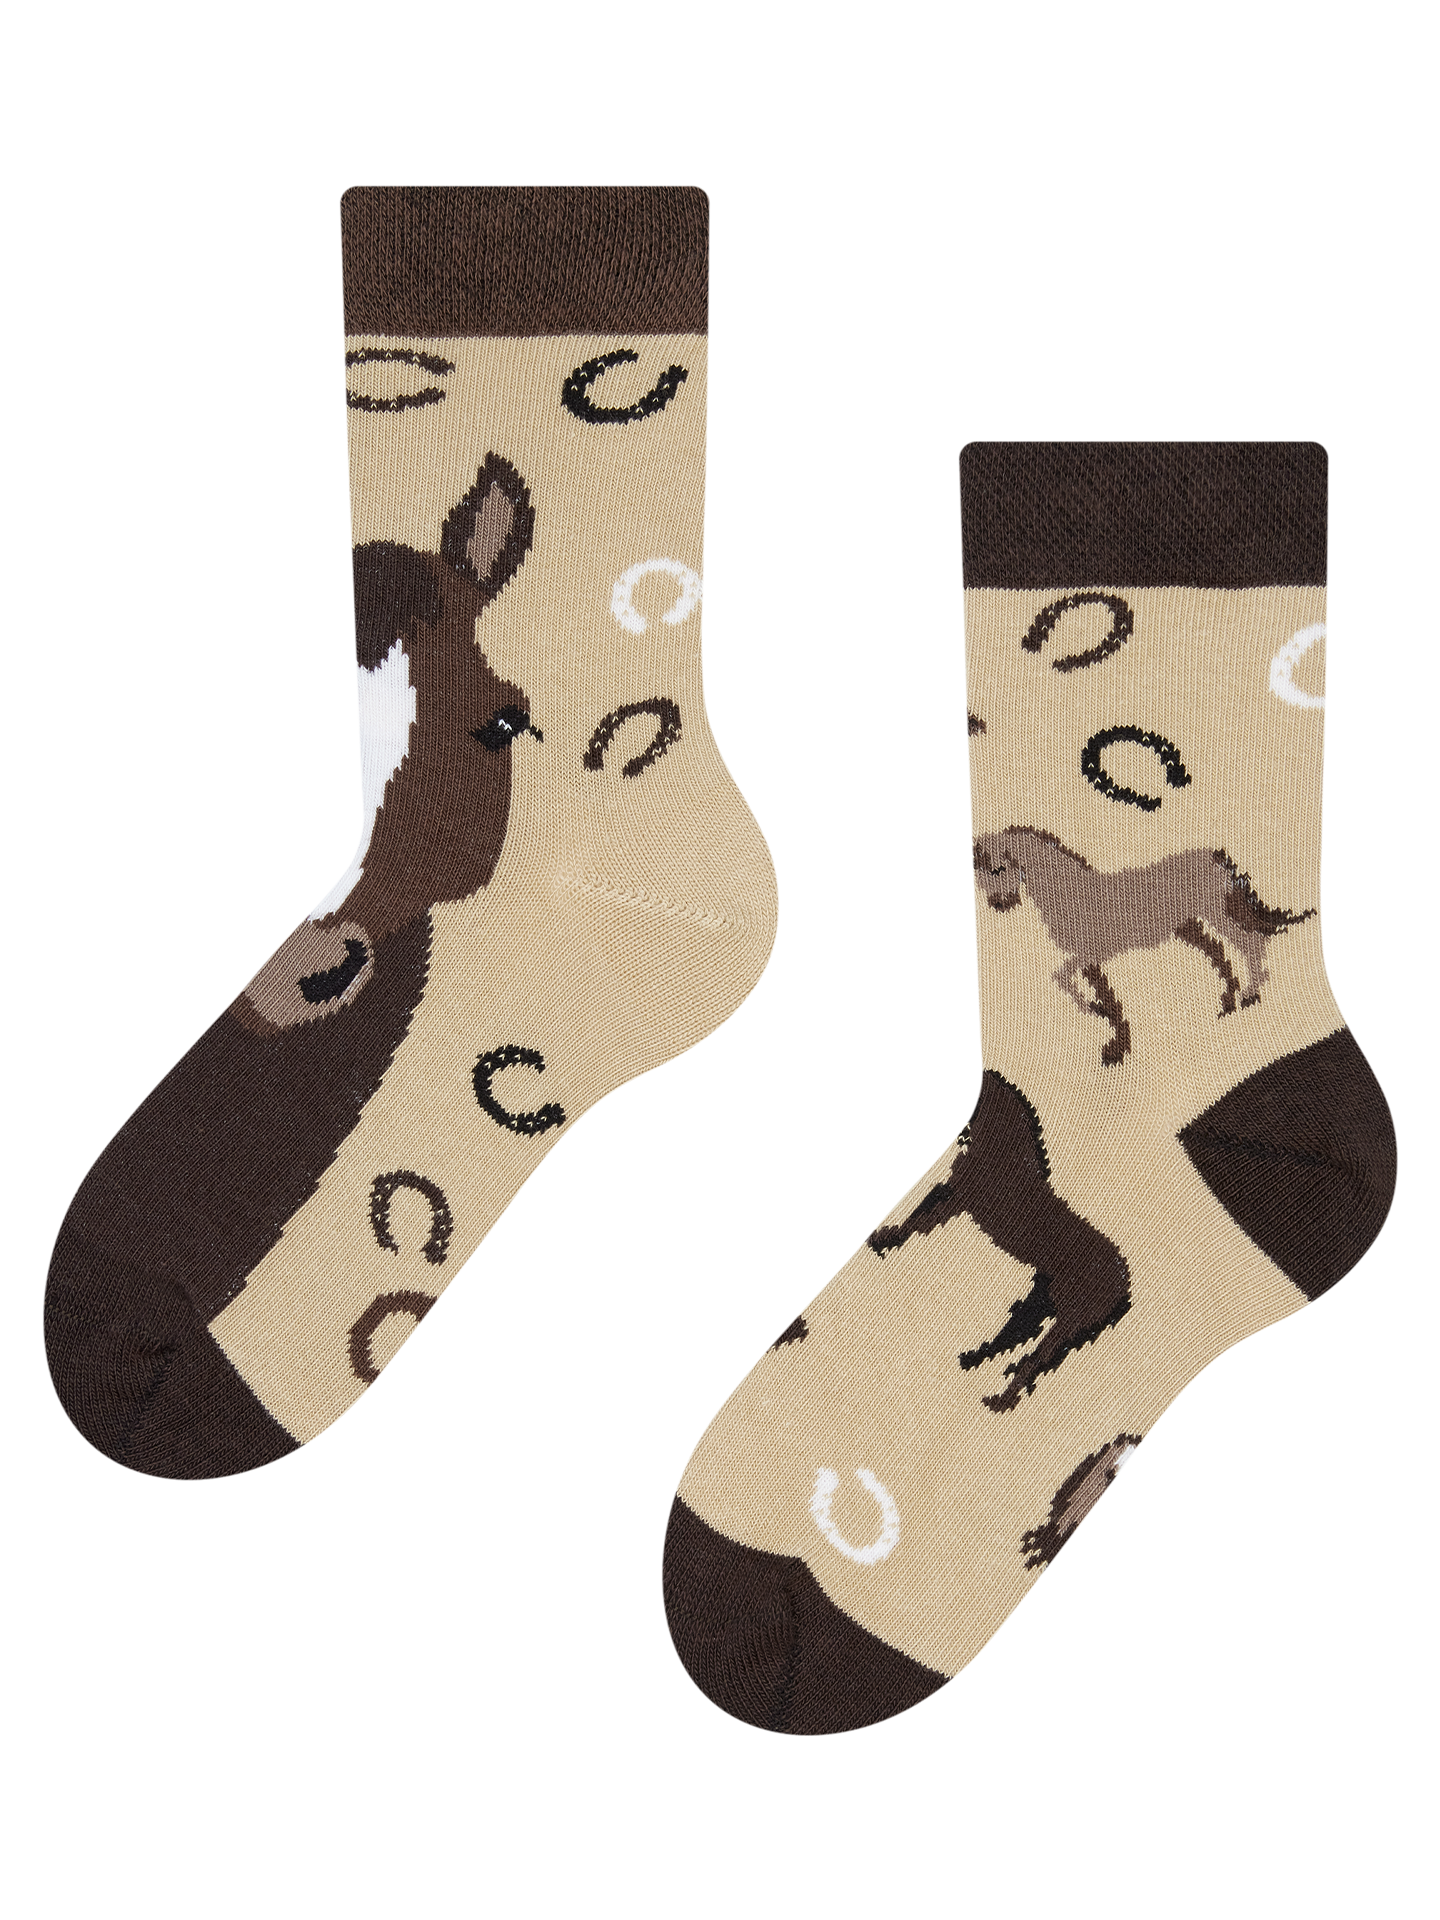 Kids' Socks Horses